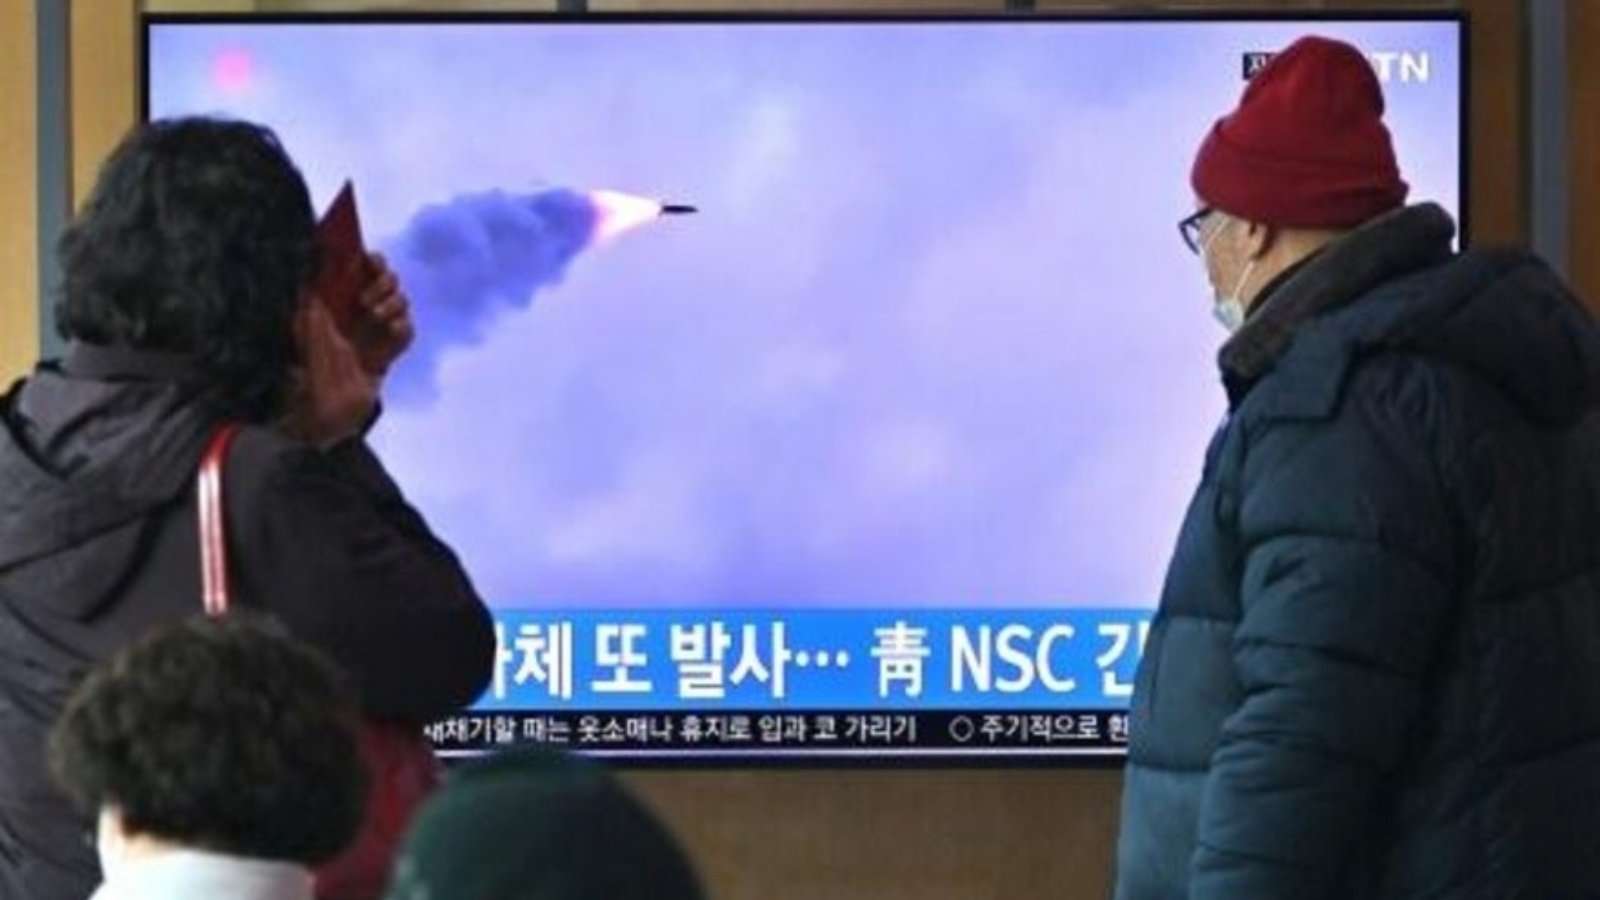 بيونغ يانغ أجرت سبع تجارب على أسلحة في يناير، بينها أقوى صاروخ لها منذ عام 2017. والتجربة التي أجرتها بيونغ يانغ الأحد هي الثامنة لها هذا العام. 